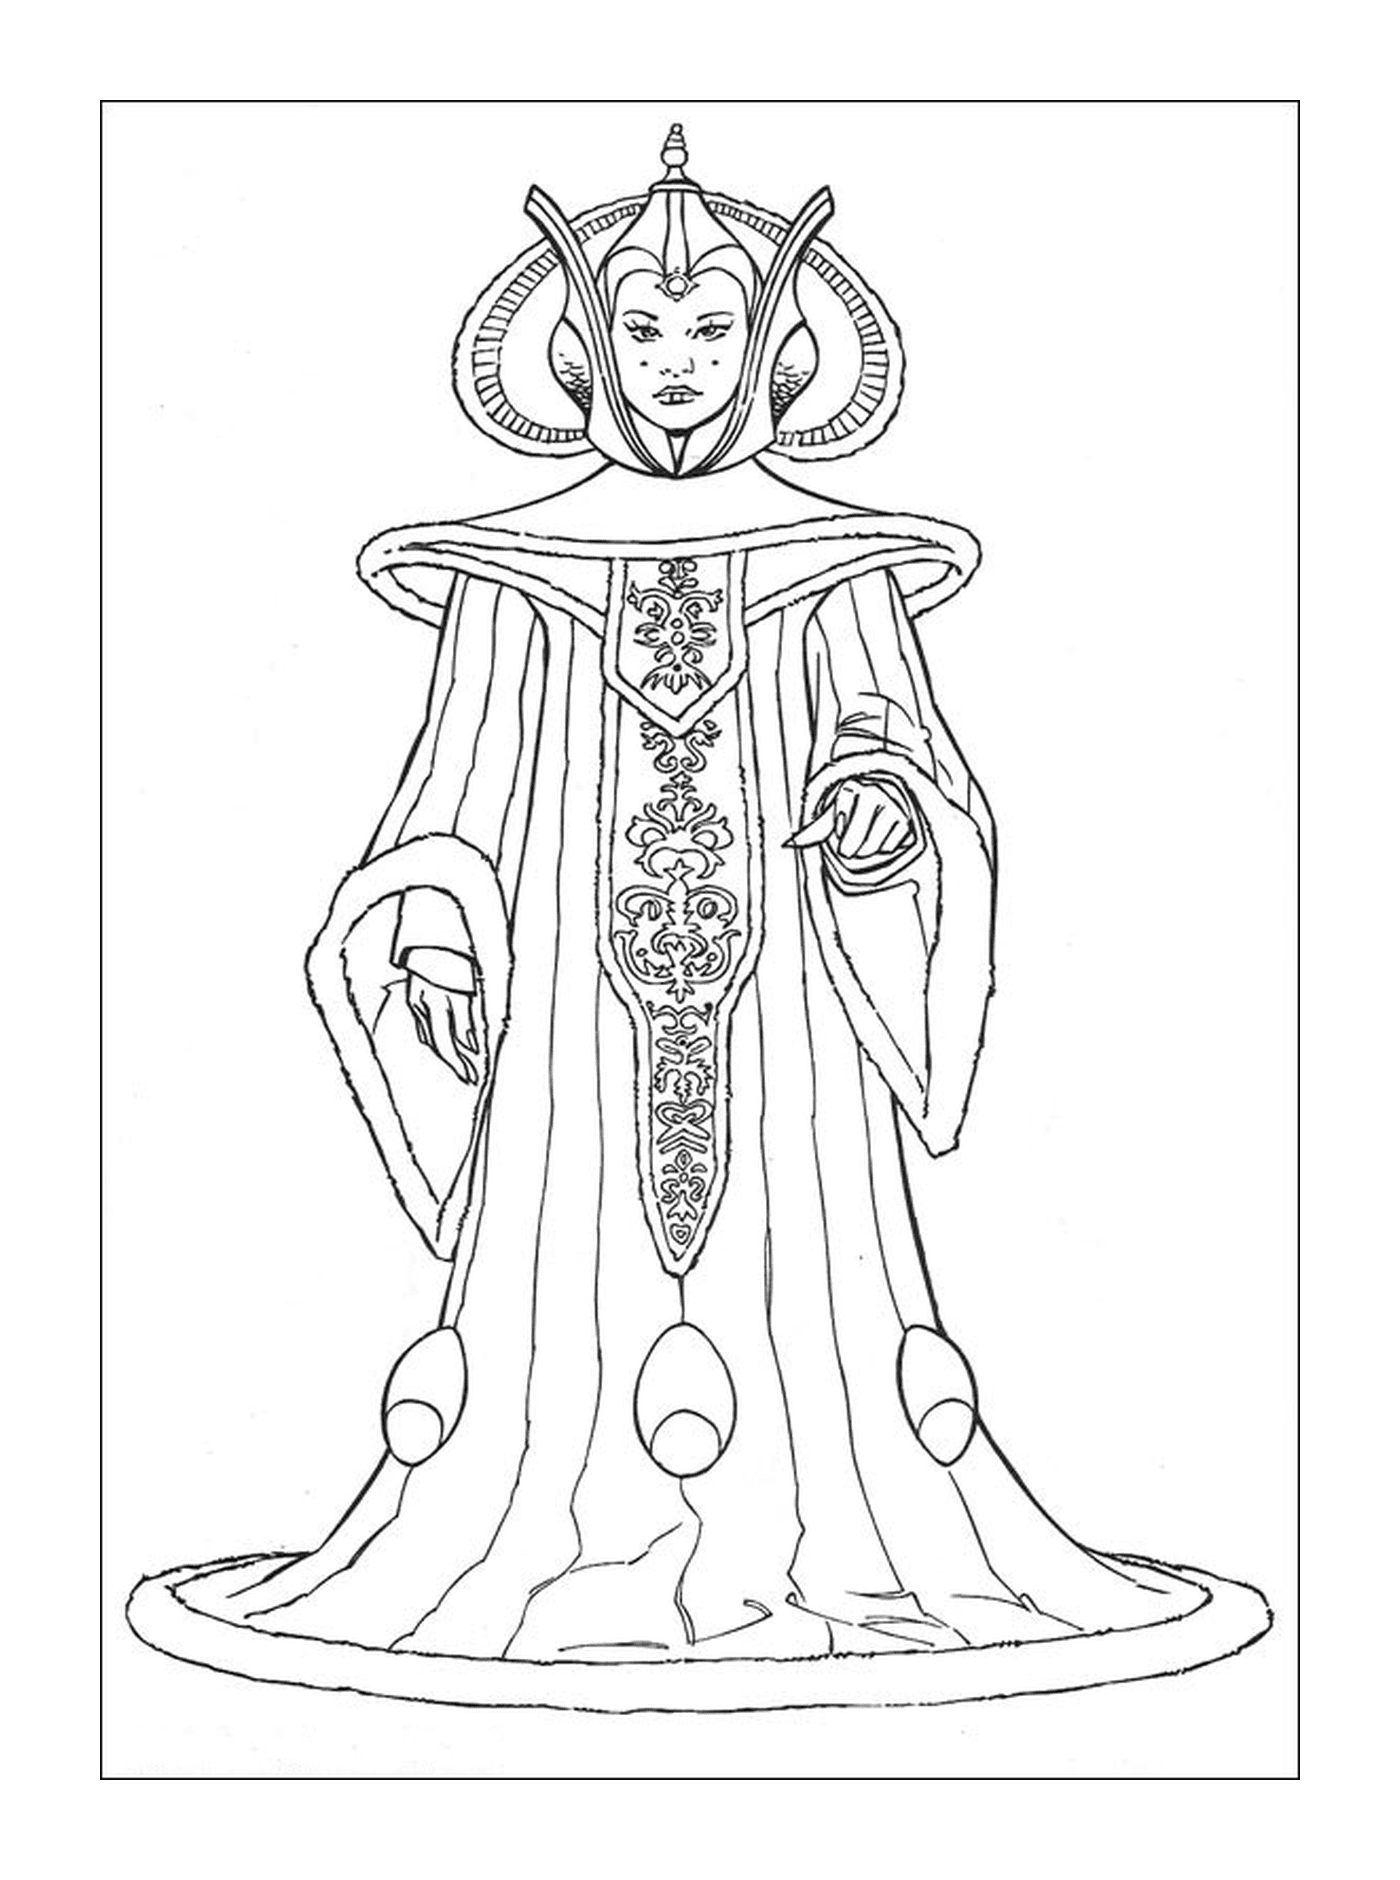  Queen Amidala of Naboo 